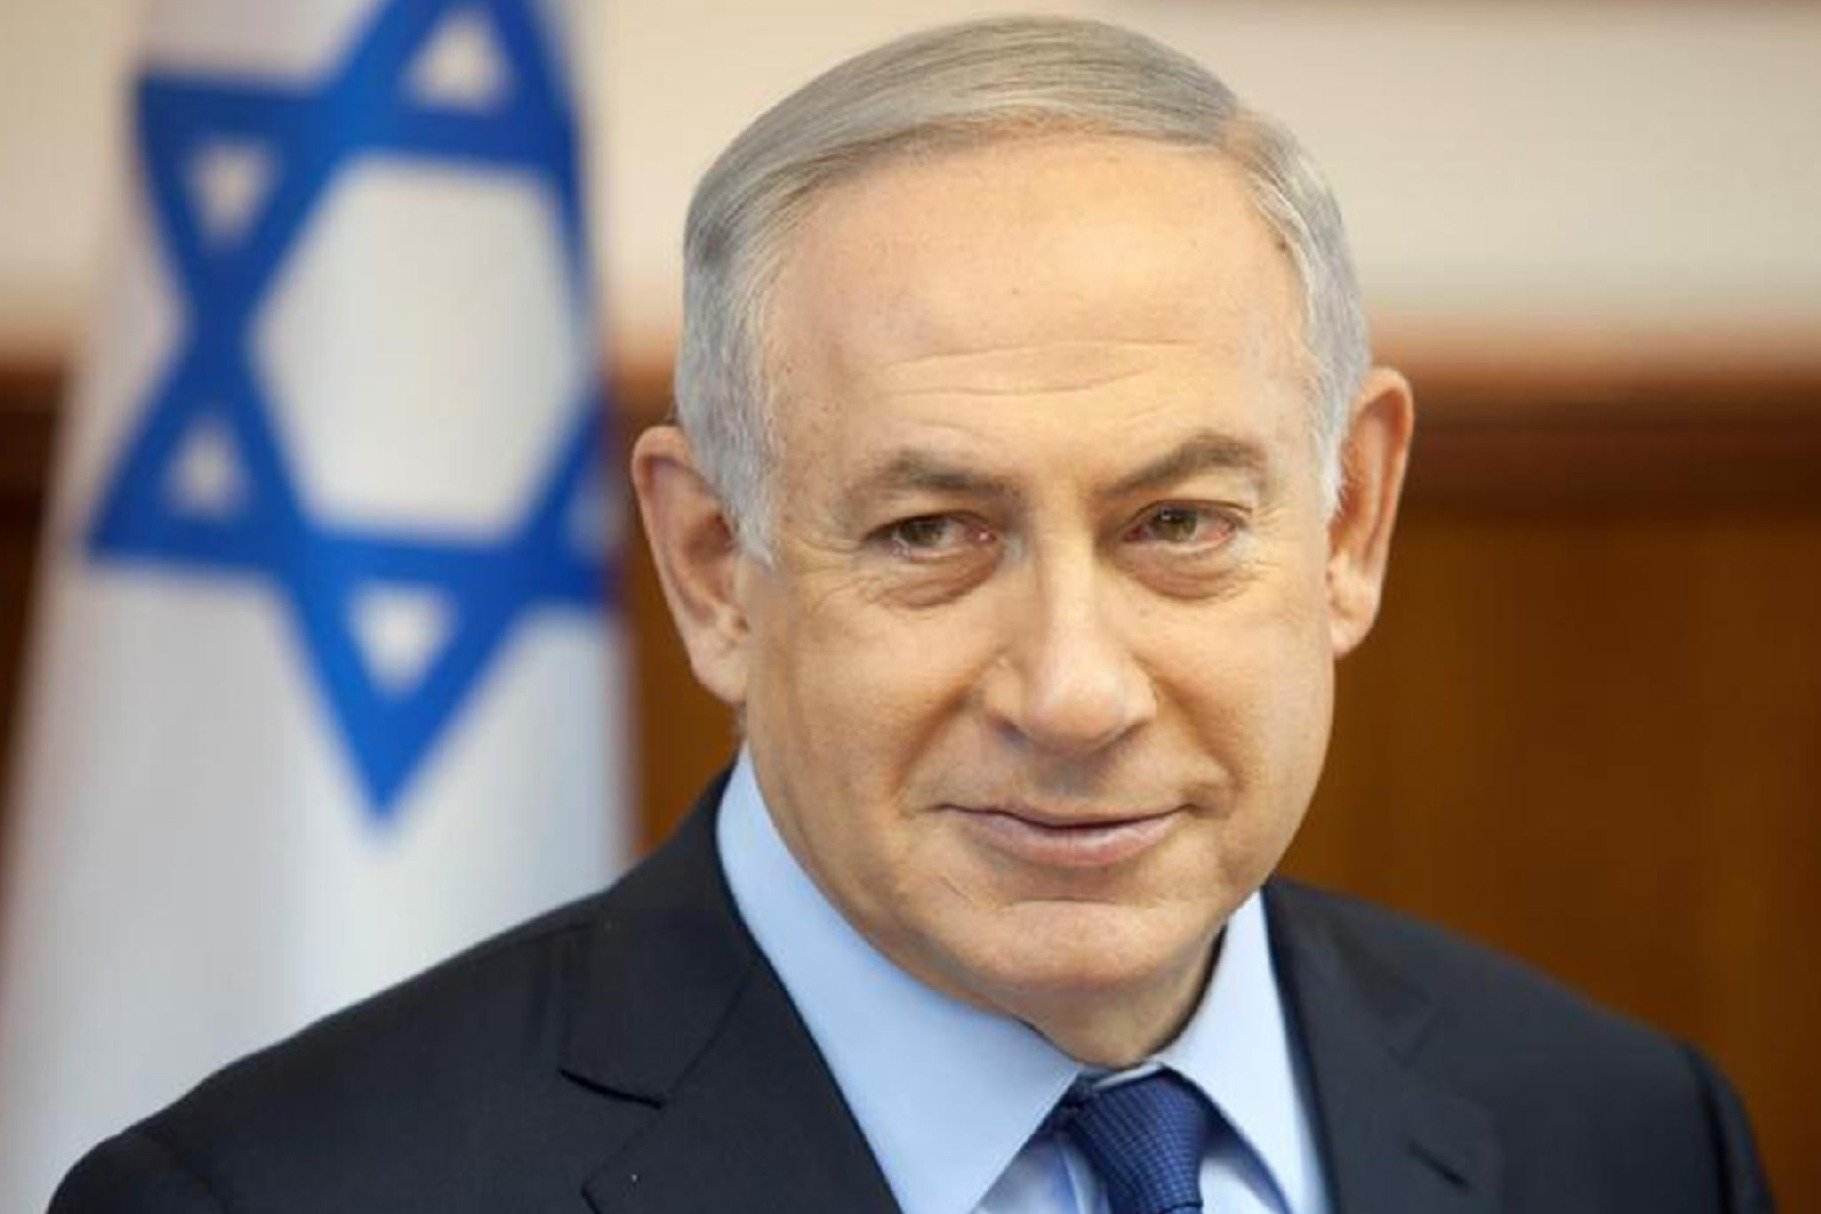 Benjamin Netanyahu visits Saudi Arabia secretly